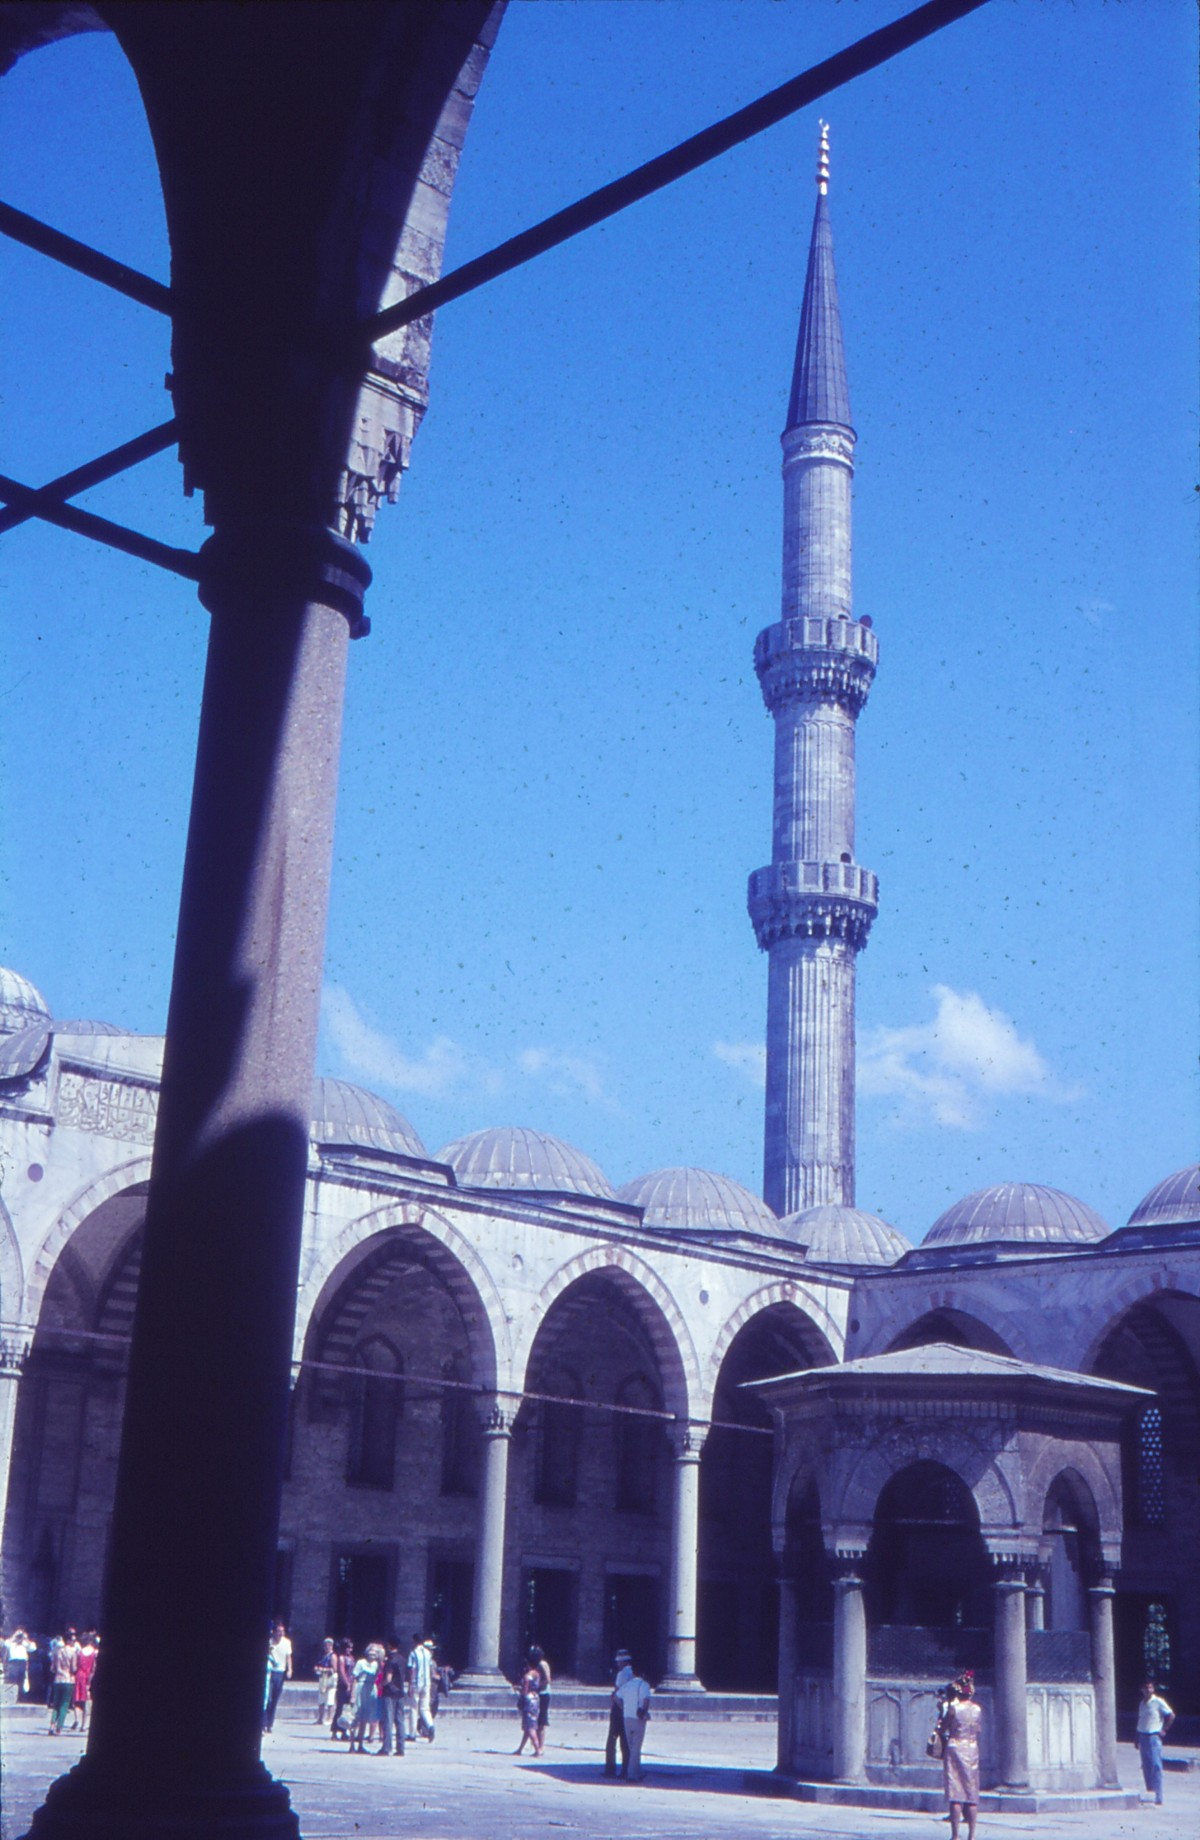 Blaue Moschee, Innenhof mit Minarett